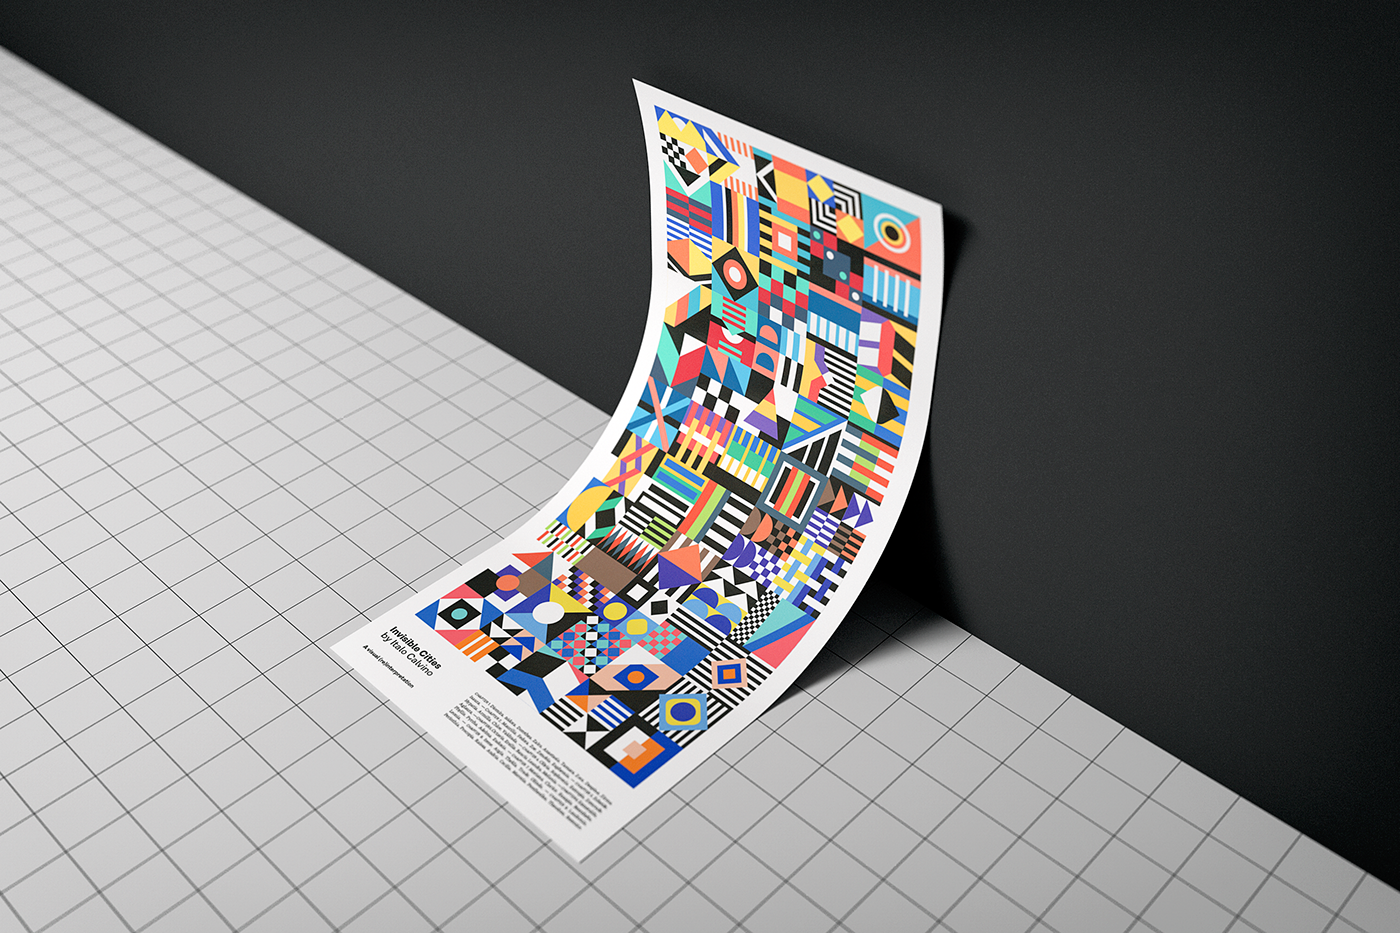 Adobe Portfolio invisible Cities italo calvino graphic spin-off ESAD matosinhos geometric Colourful  pattern Interpretation book poster inspire